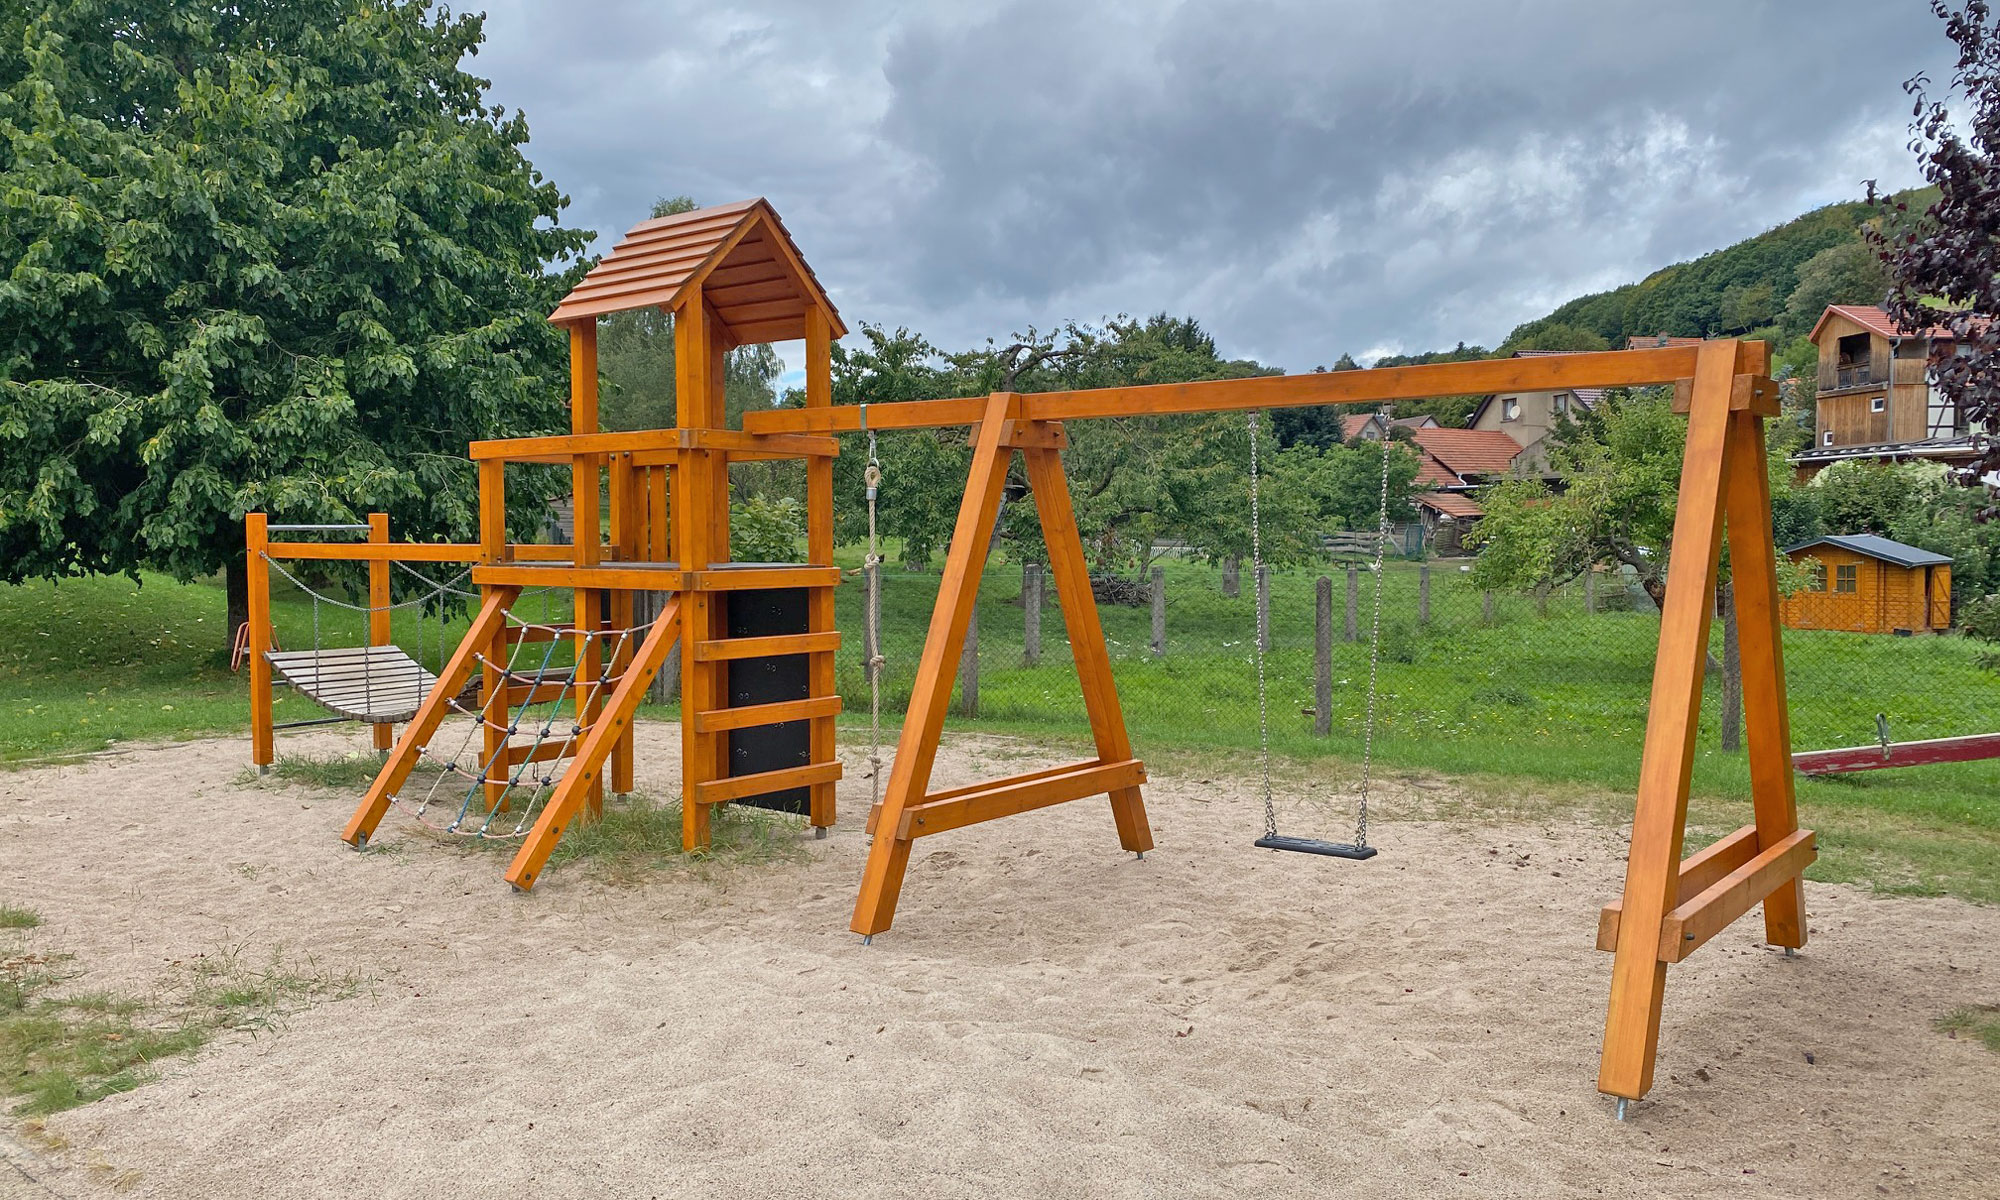 Bolz- und Spielplatz in Kittelsthal eingeweiht